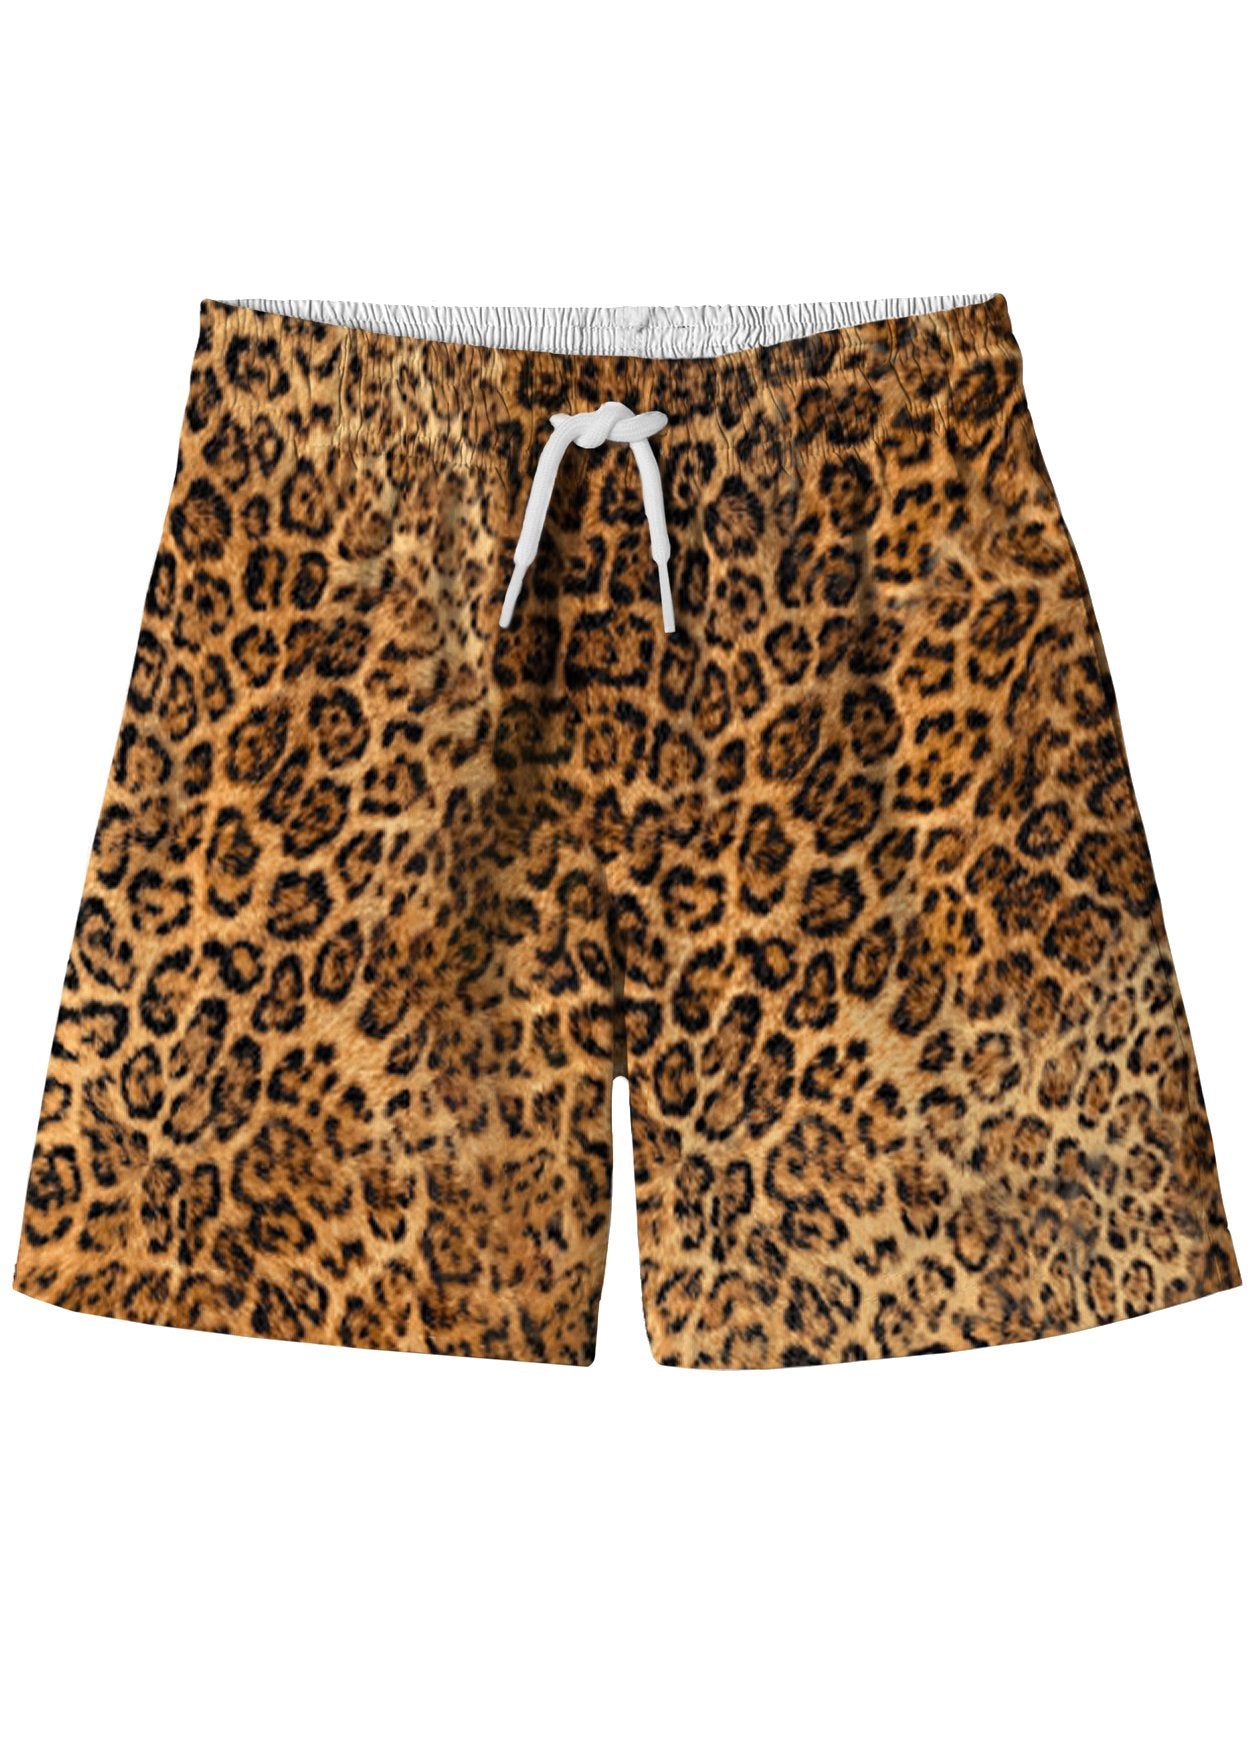 Pantallona të shkurtra të bordit Cheetah